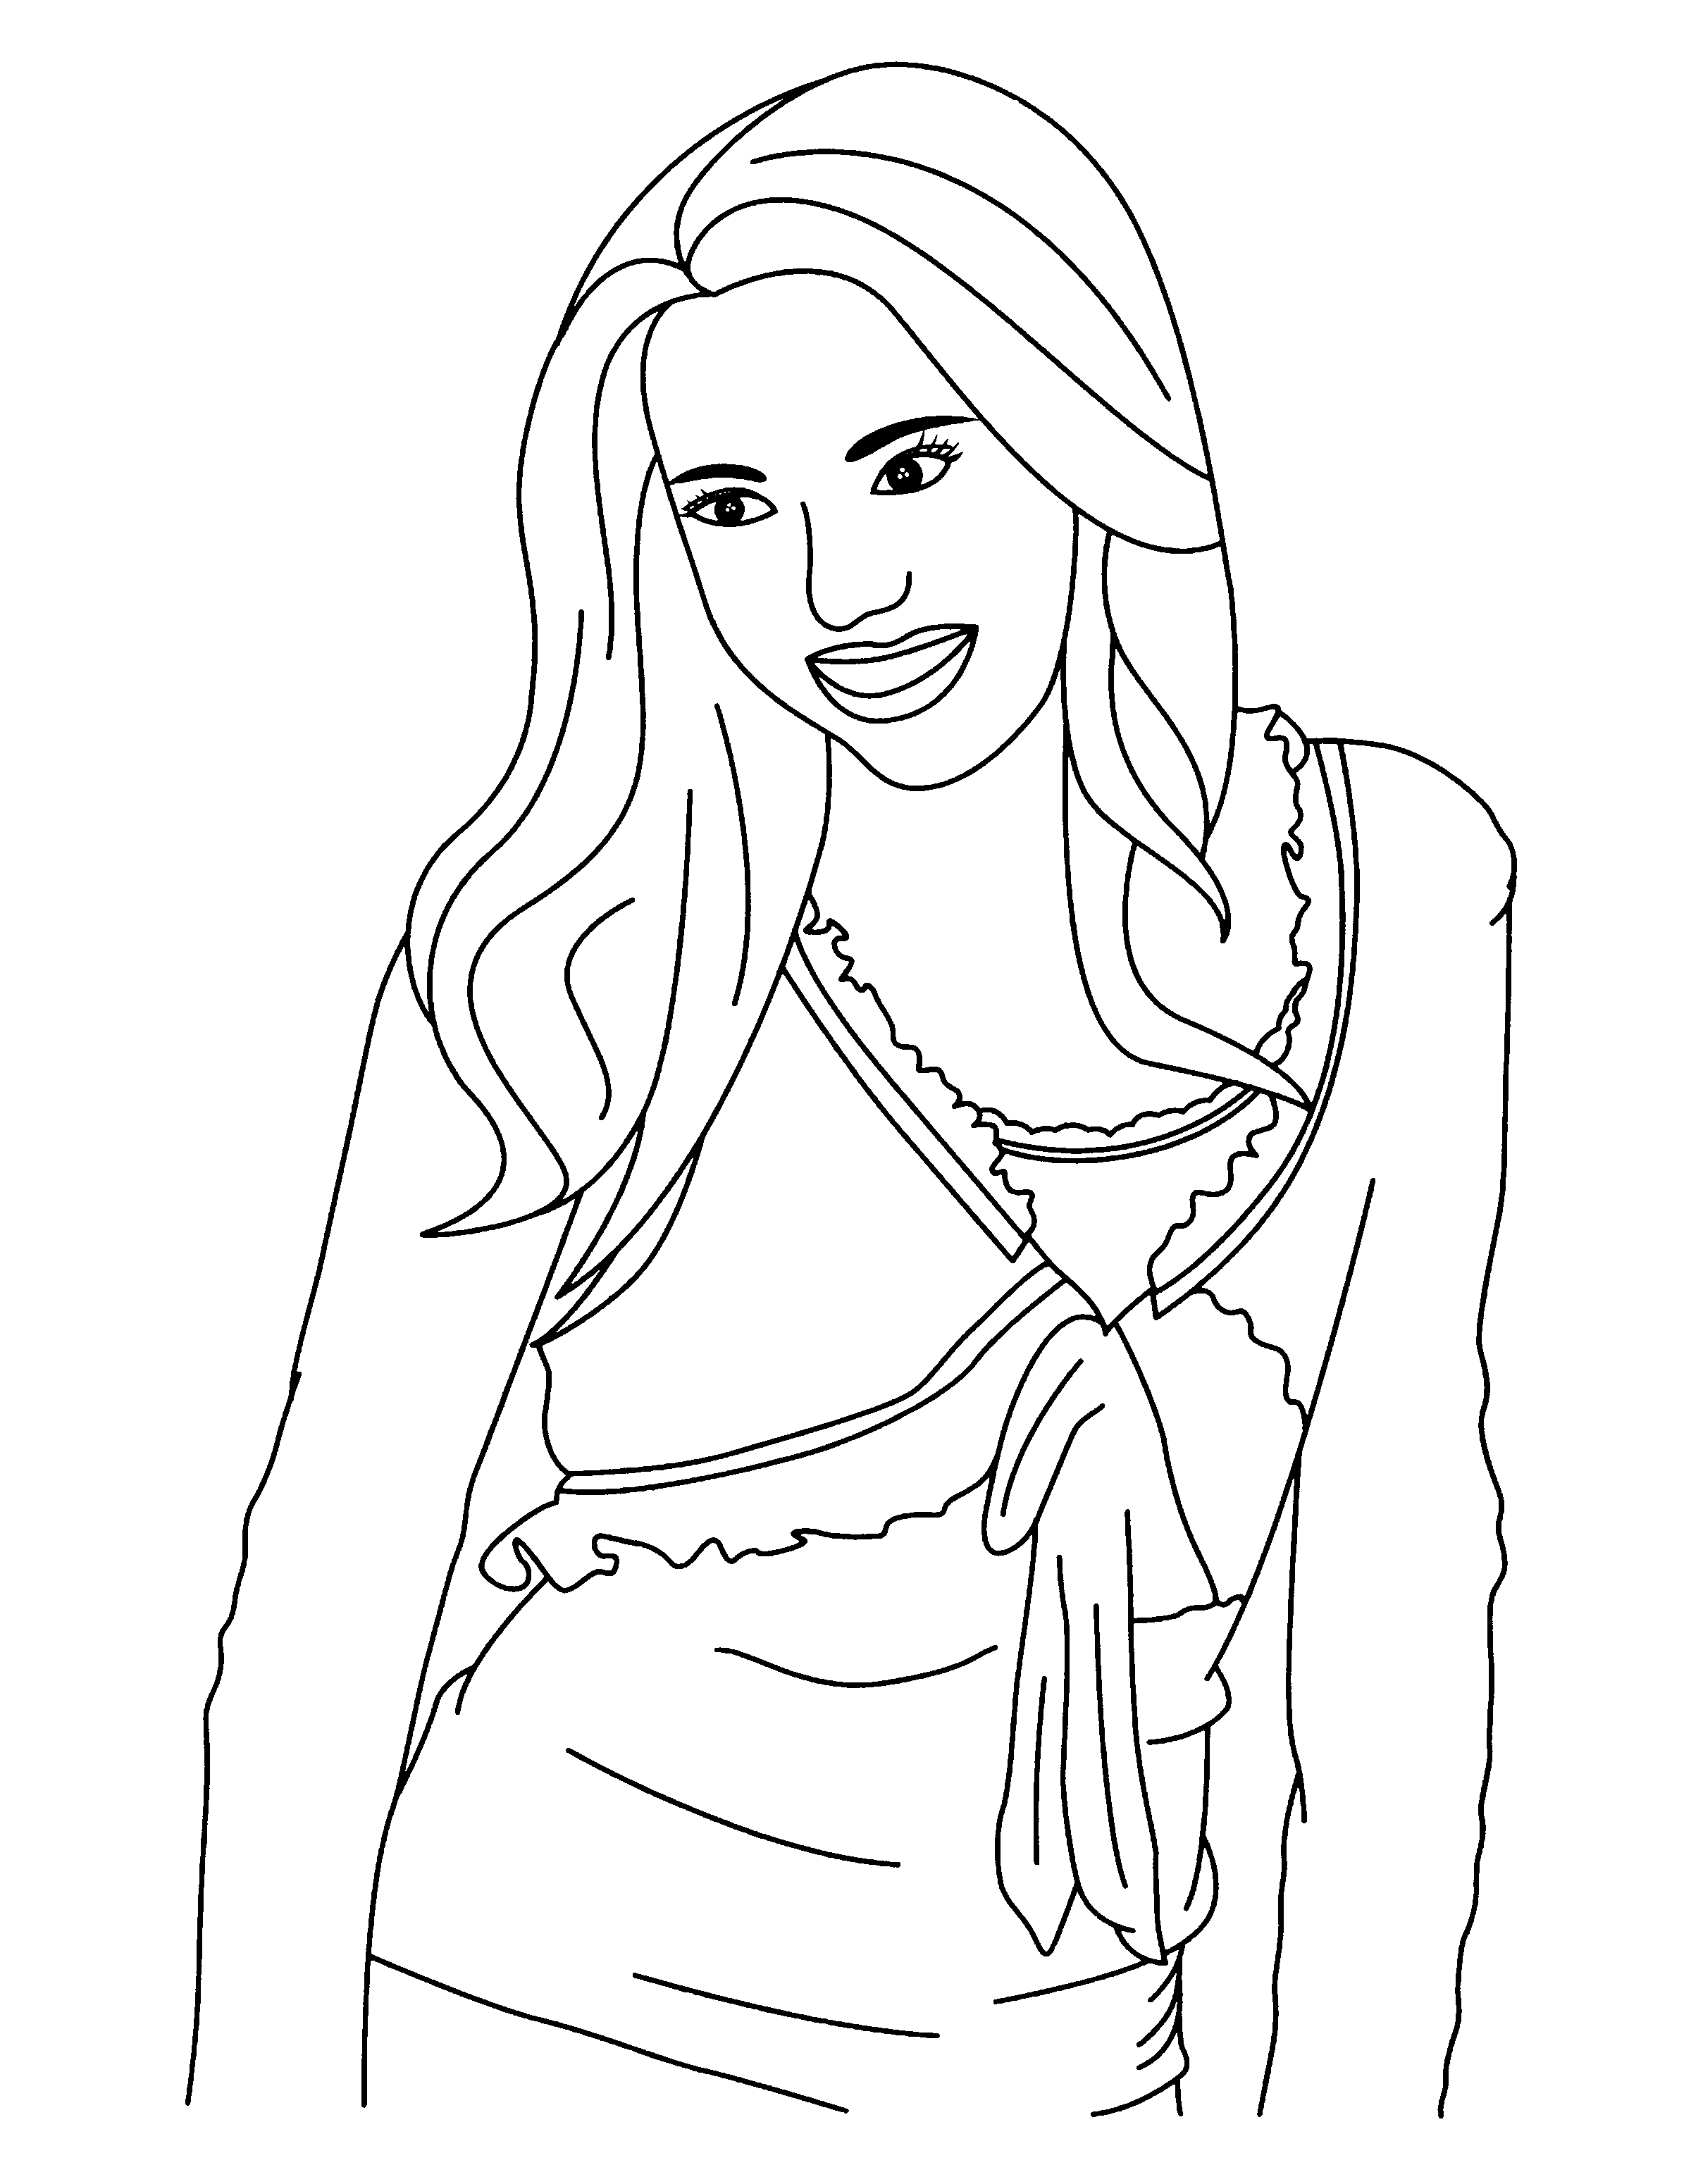 Hannah Montana drawing and coloring page